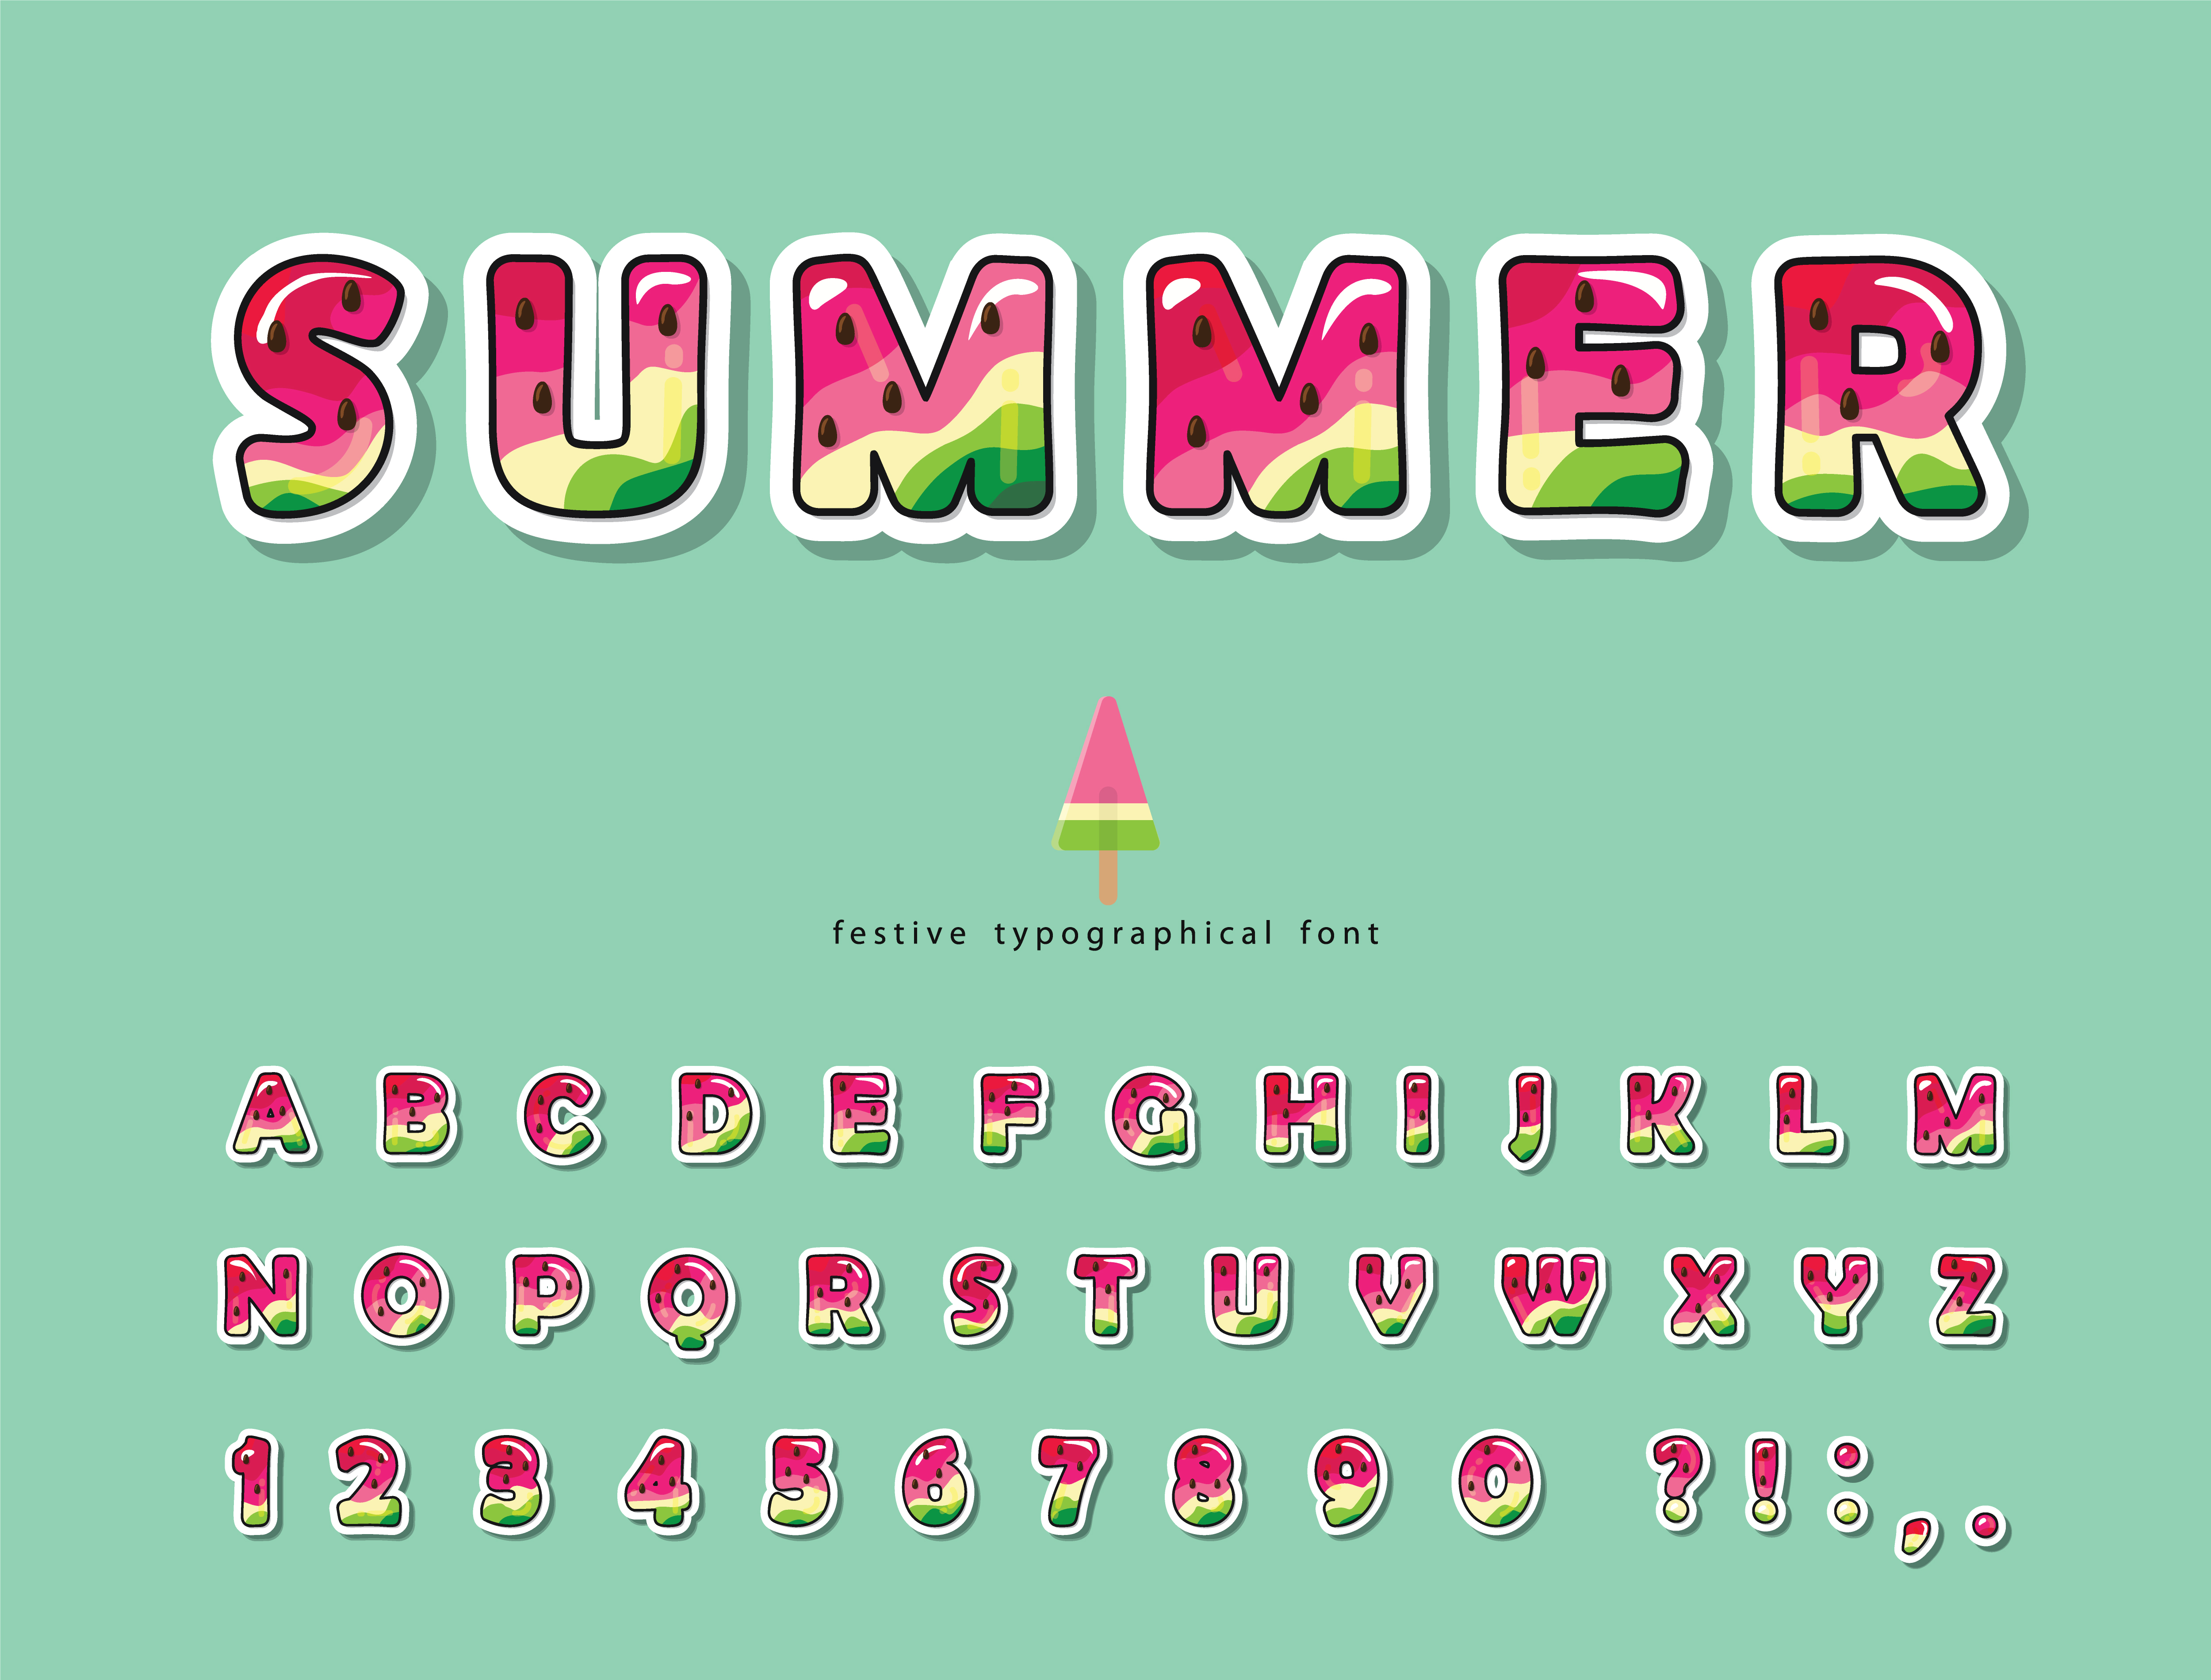 Watermelon summer trendy font 700243 - Download Free Vectors, Clipart